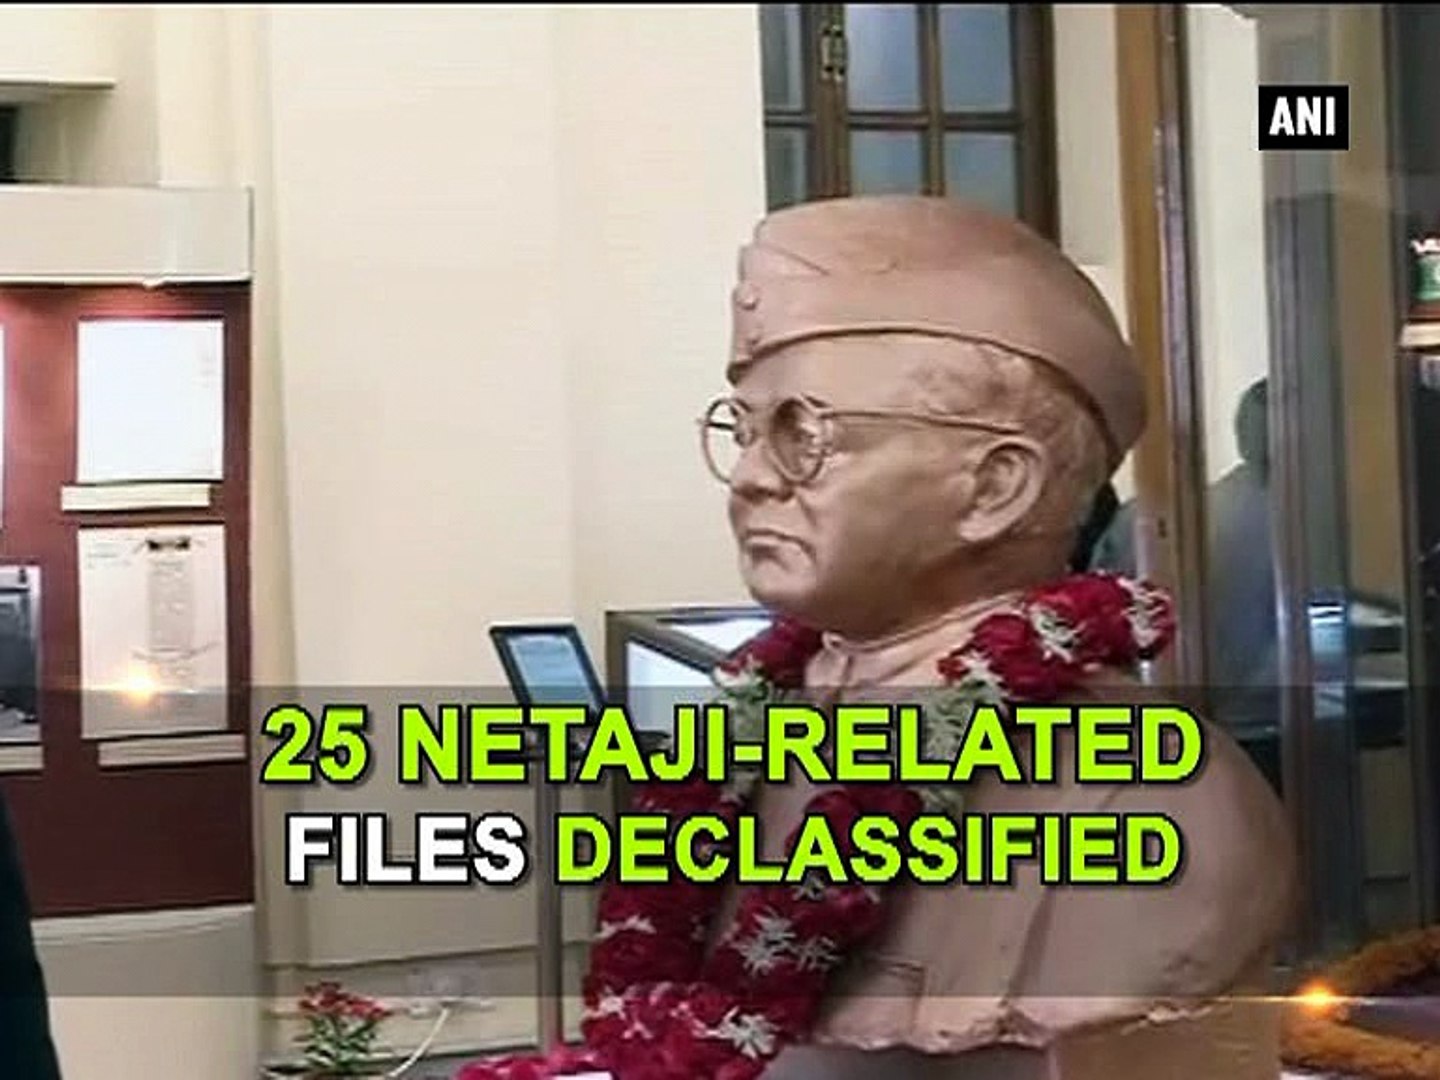 25 Netaji-related files declassified